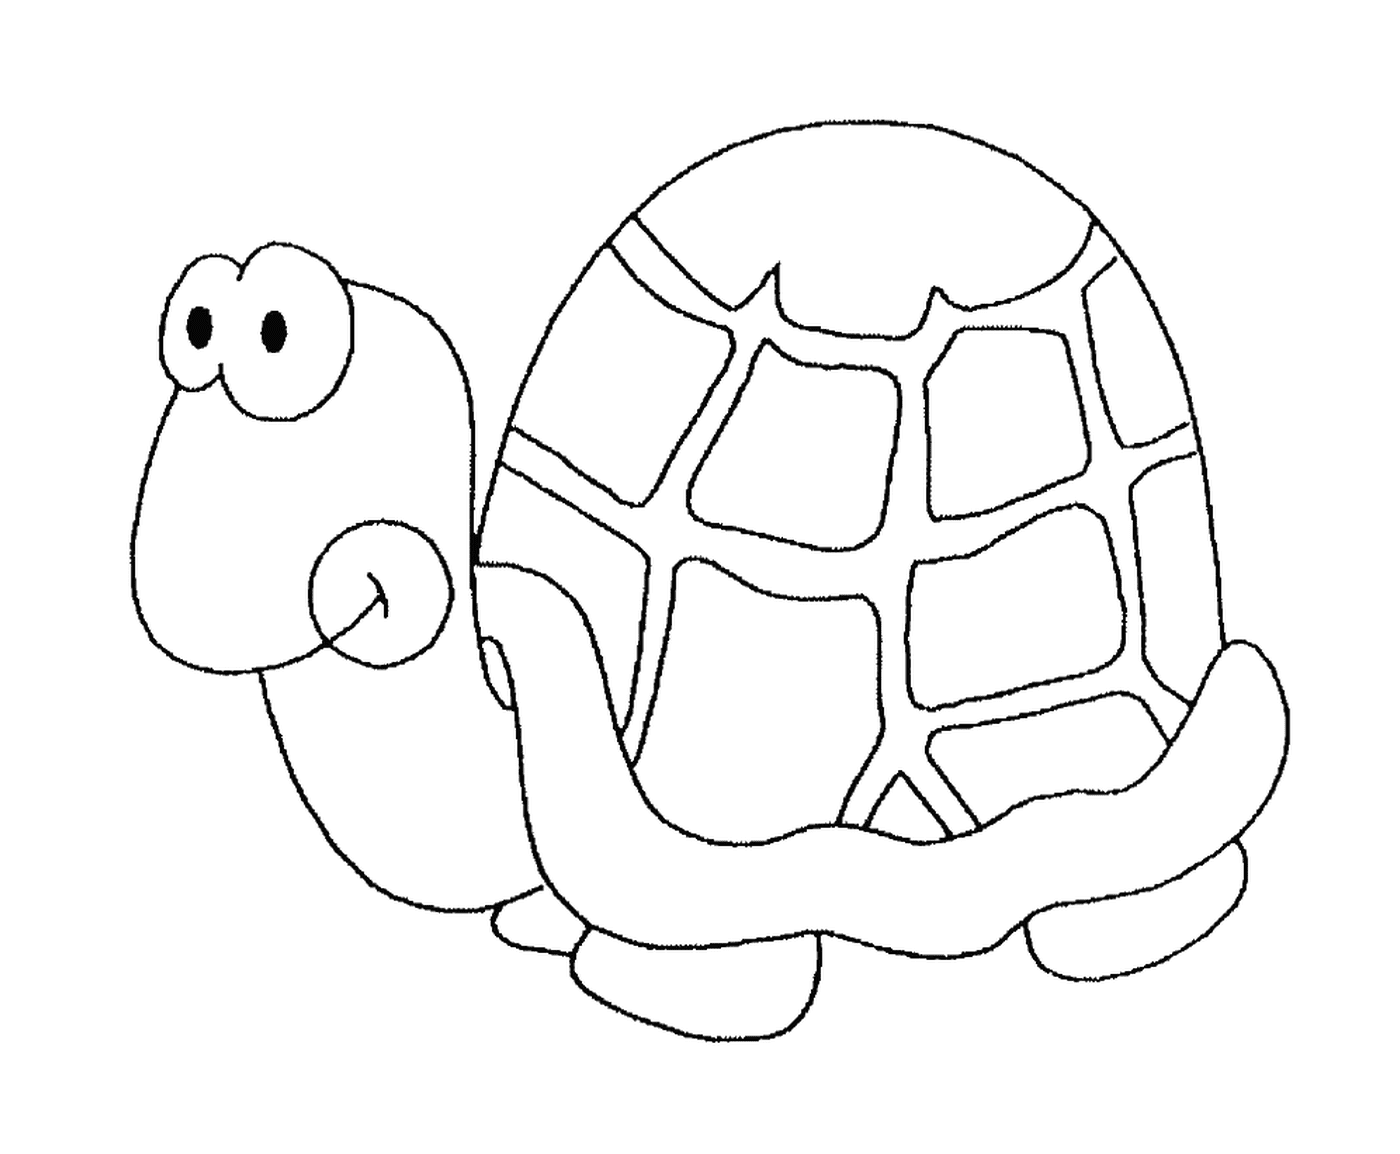  tartaruga de concha redonda 